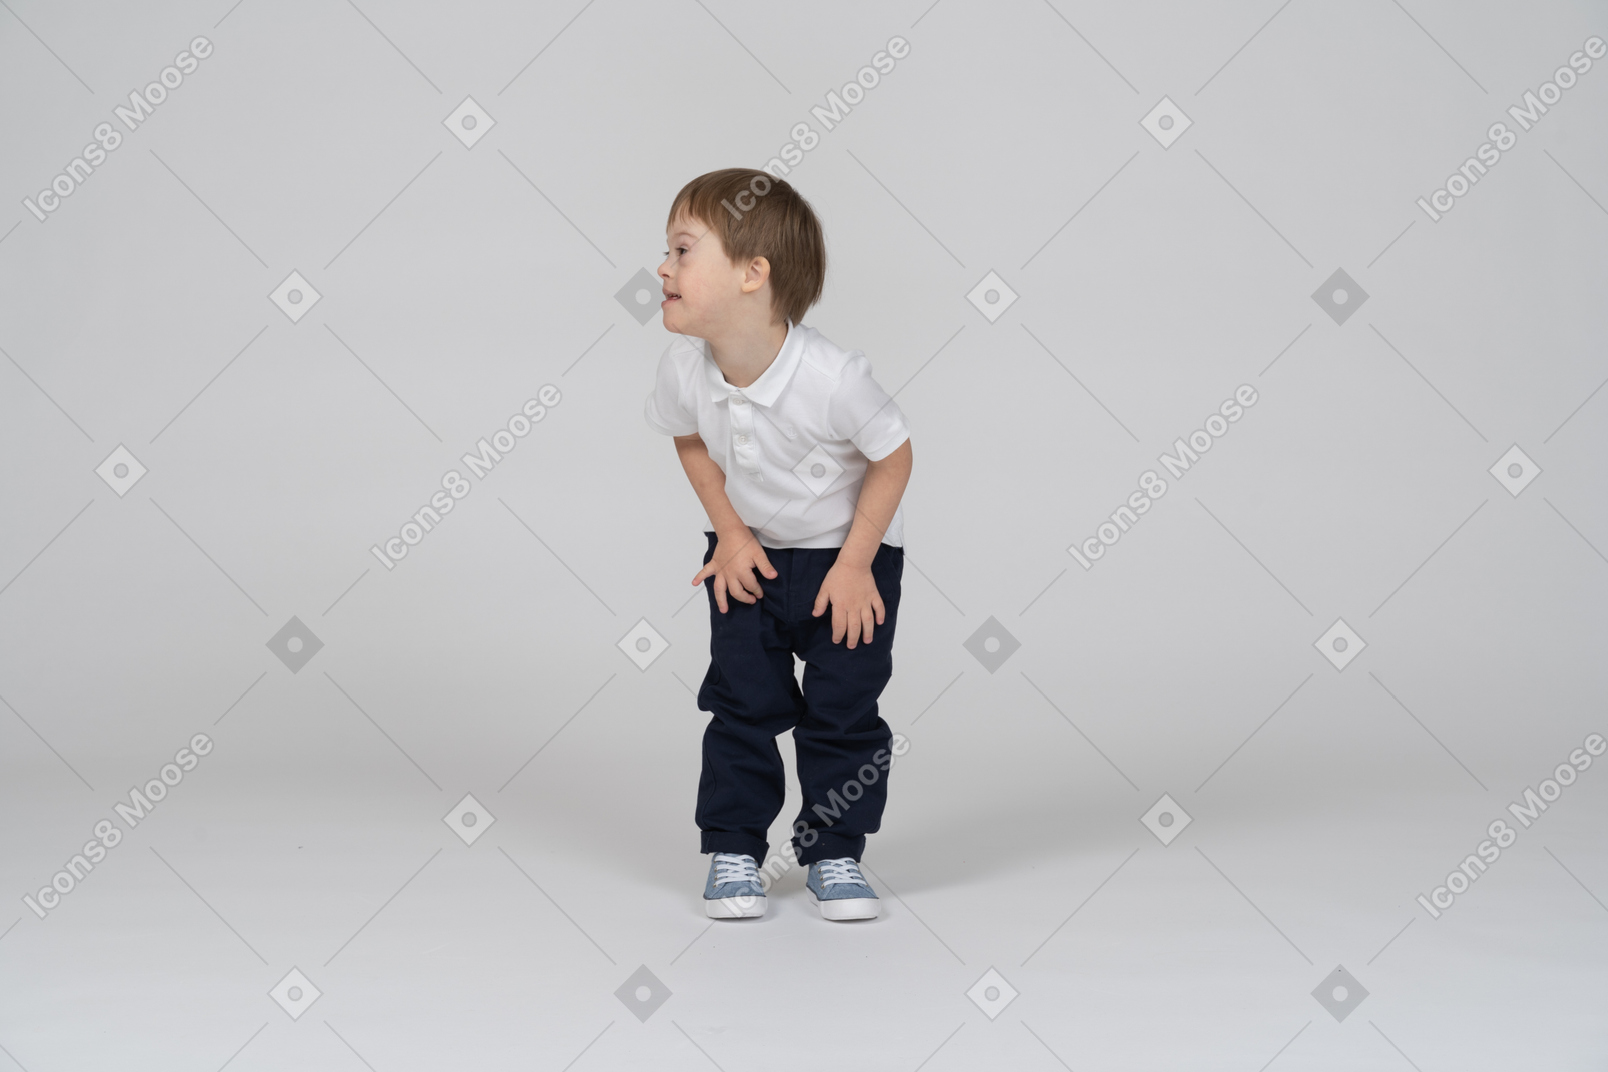 Vista frontal del niño inclinado hacia adelante y mirando a un lado